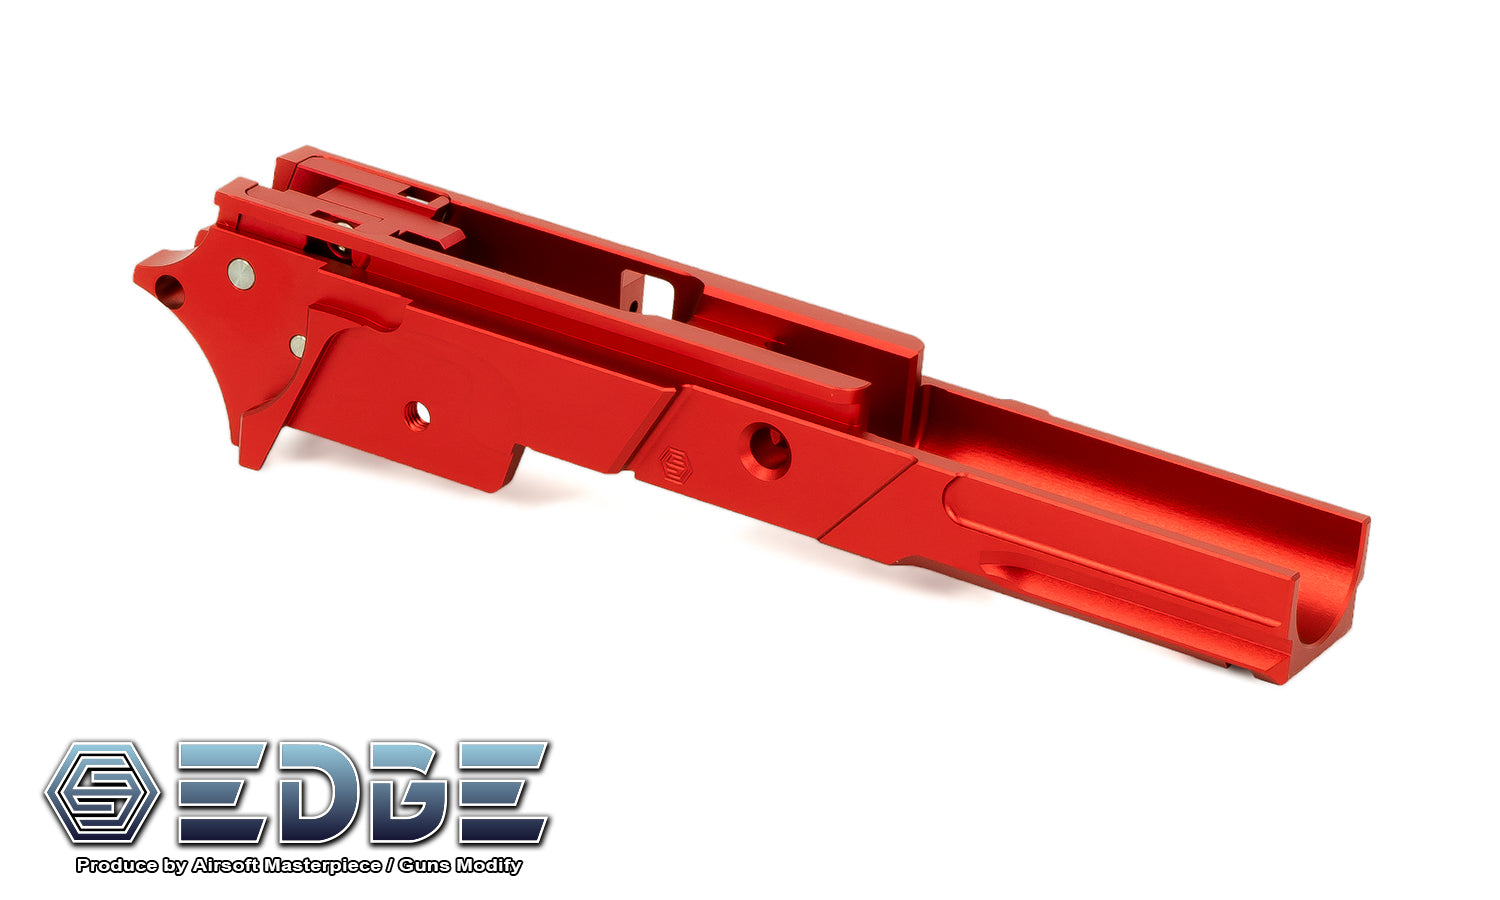 EDGE “STRAT” 3.9" Aluminum Frame for Hi-CAPA - Red